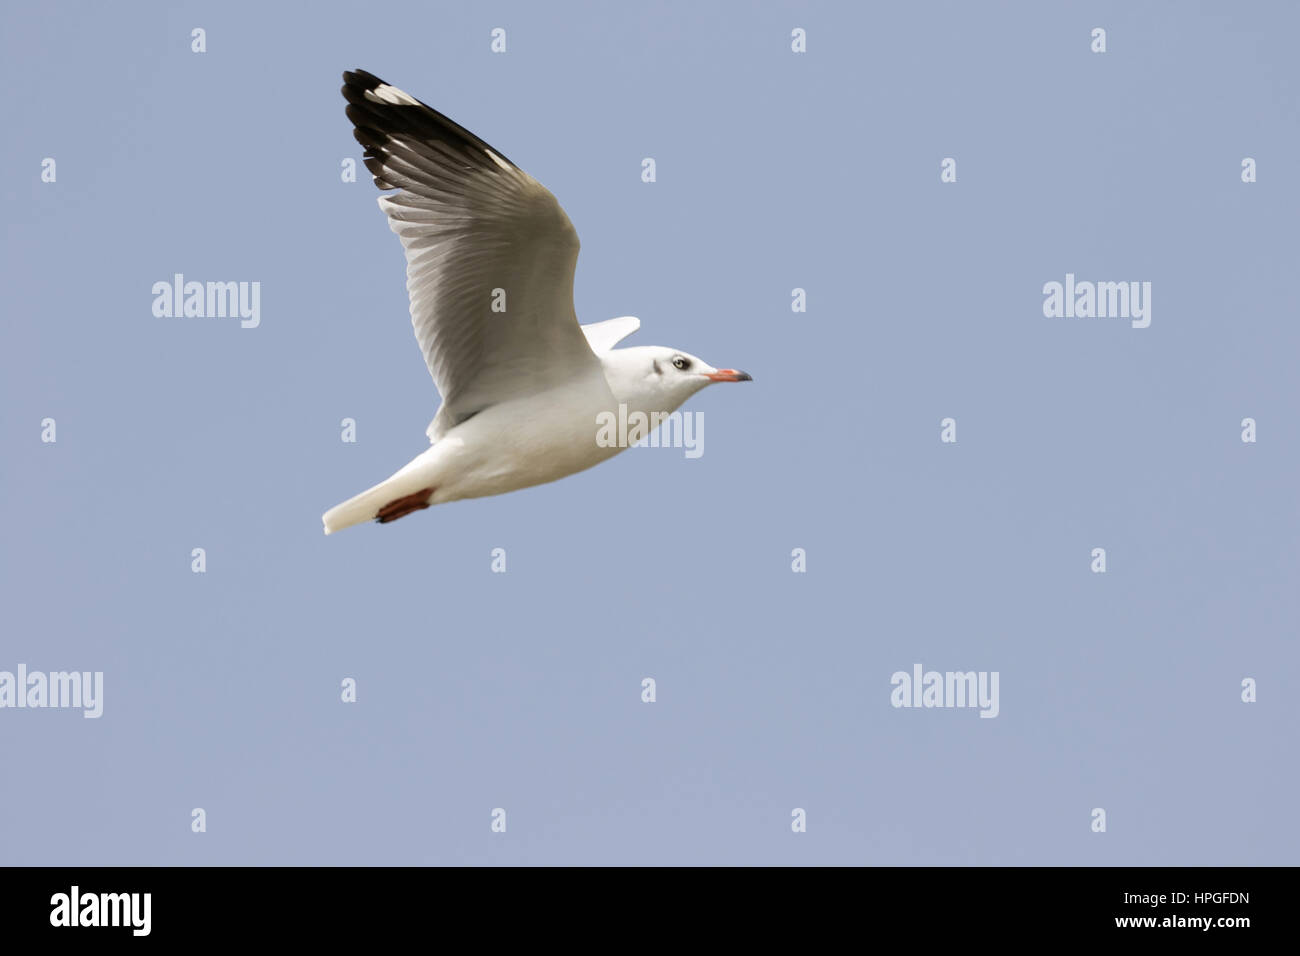 Gros plan du seagull flying, Ujjani Bhigwan des mares, barrages, Maharashtra, Inde Banque D'Images